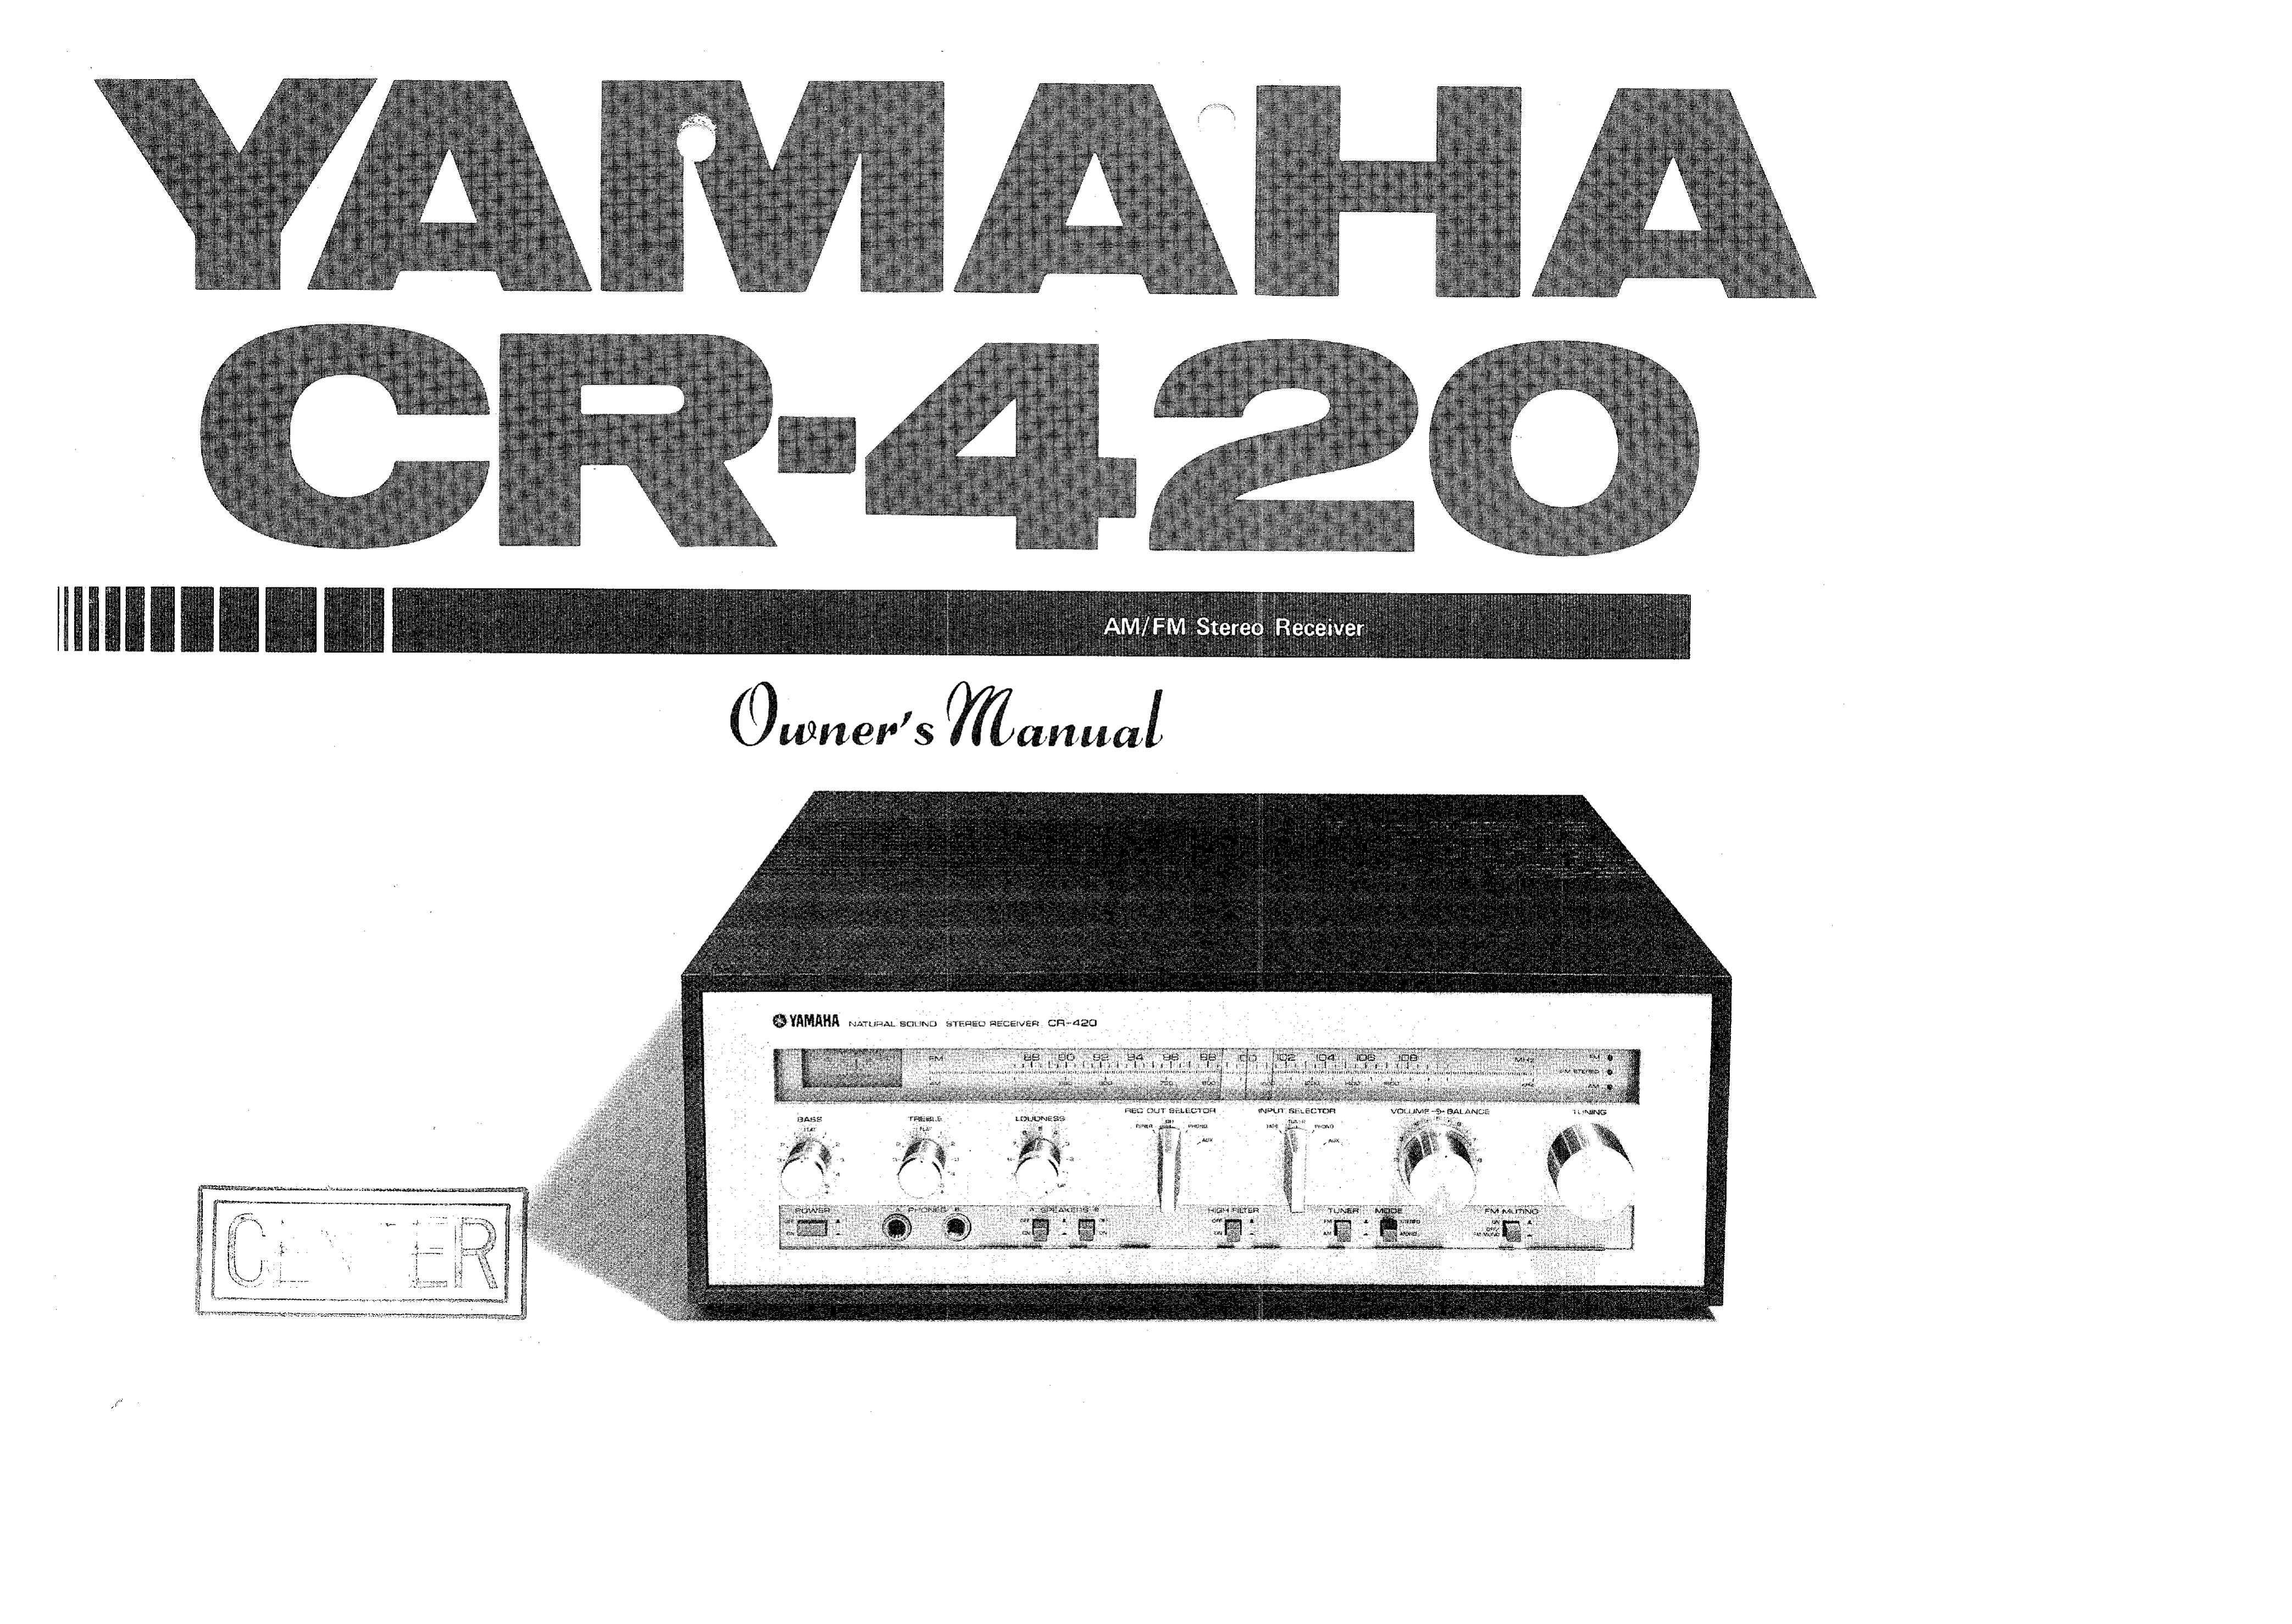 Yamaha CR-420 Music Mixer User Manual